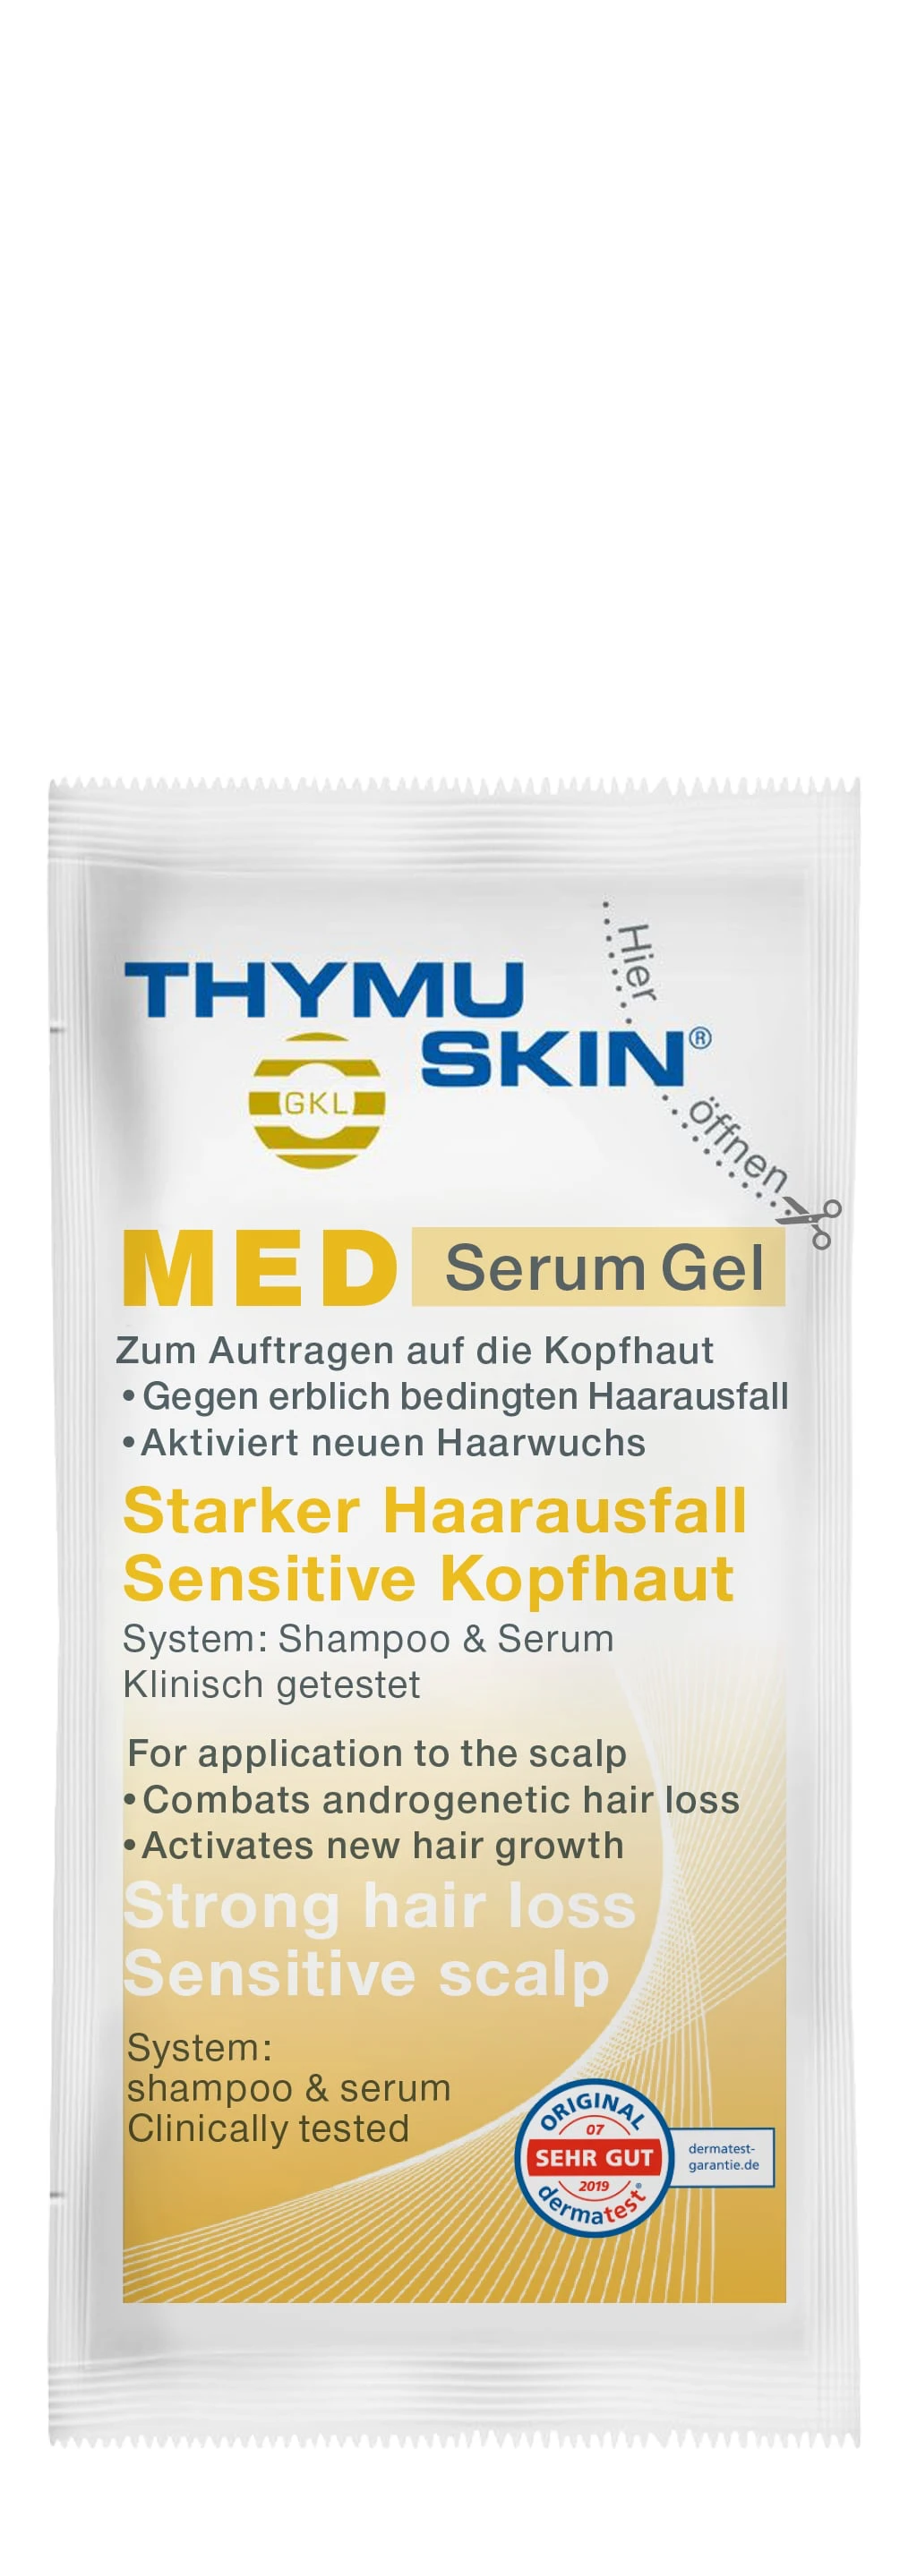 MED Serum Gel (Sample)